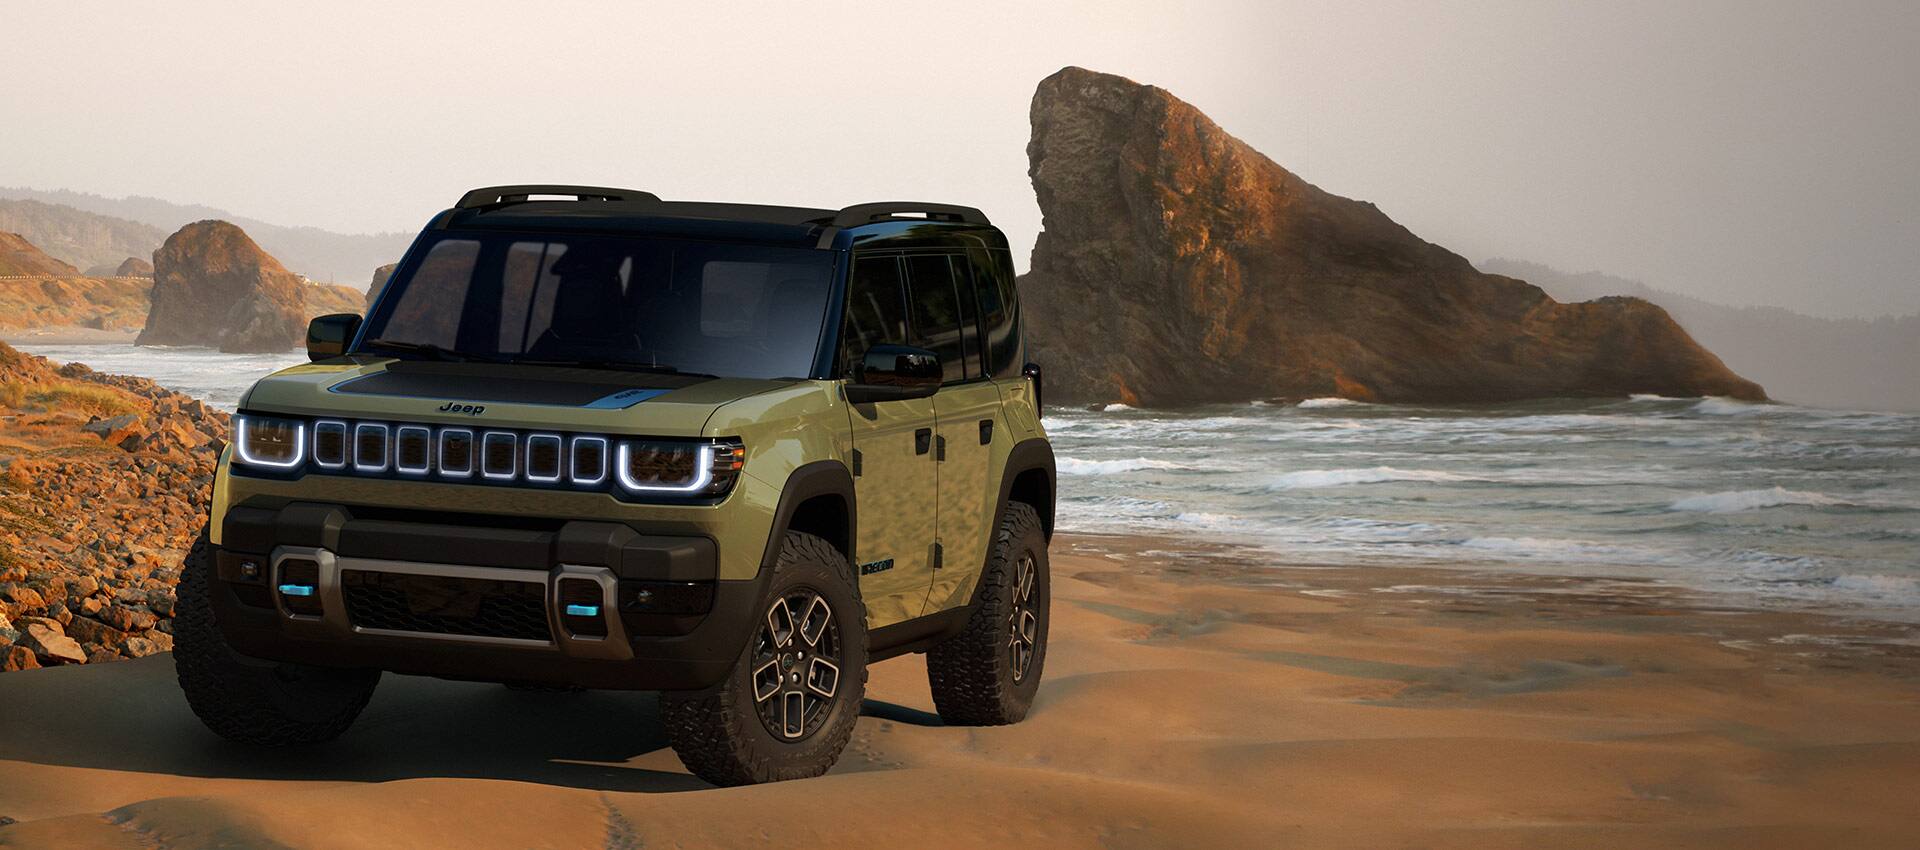 El Jeep Recon 4xe 2023 estacionado en una playa de arena roja con grandes formaciones rocosas a la distancia.